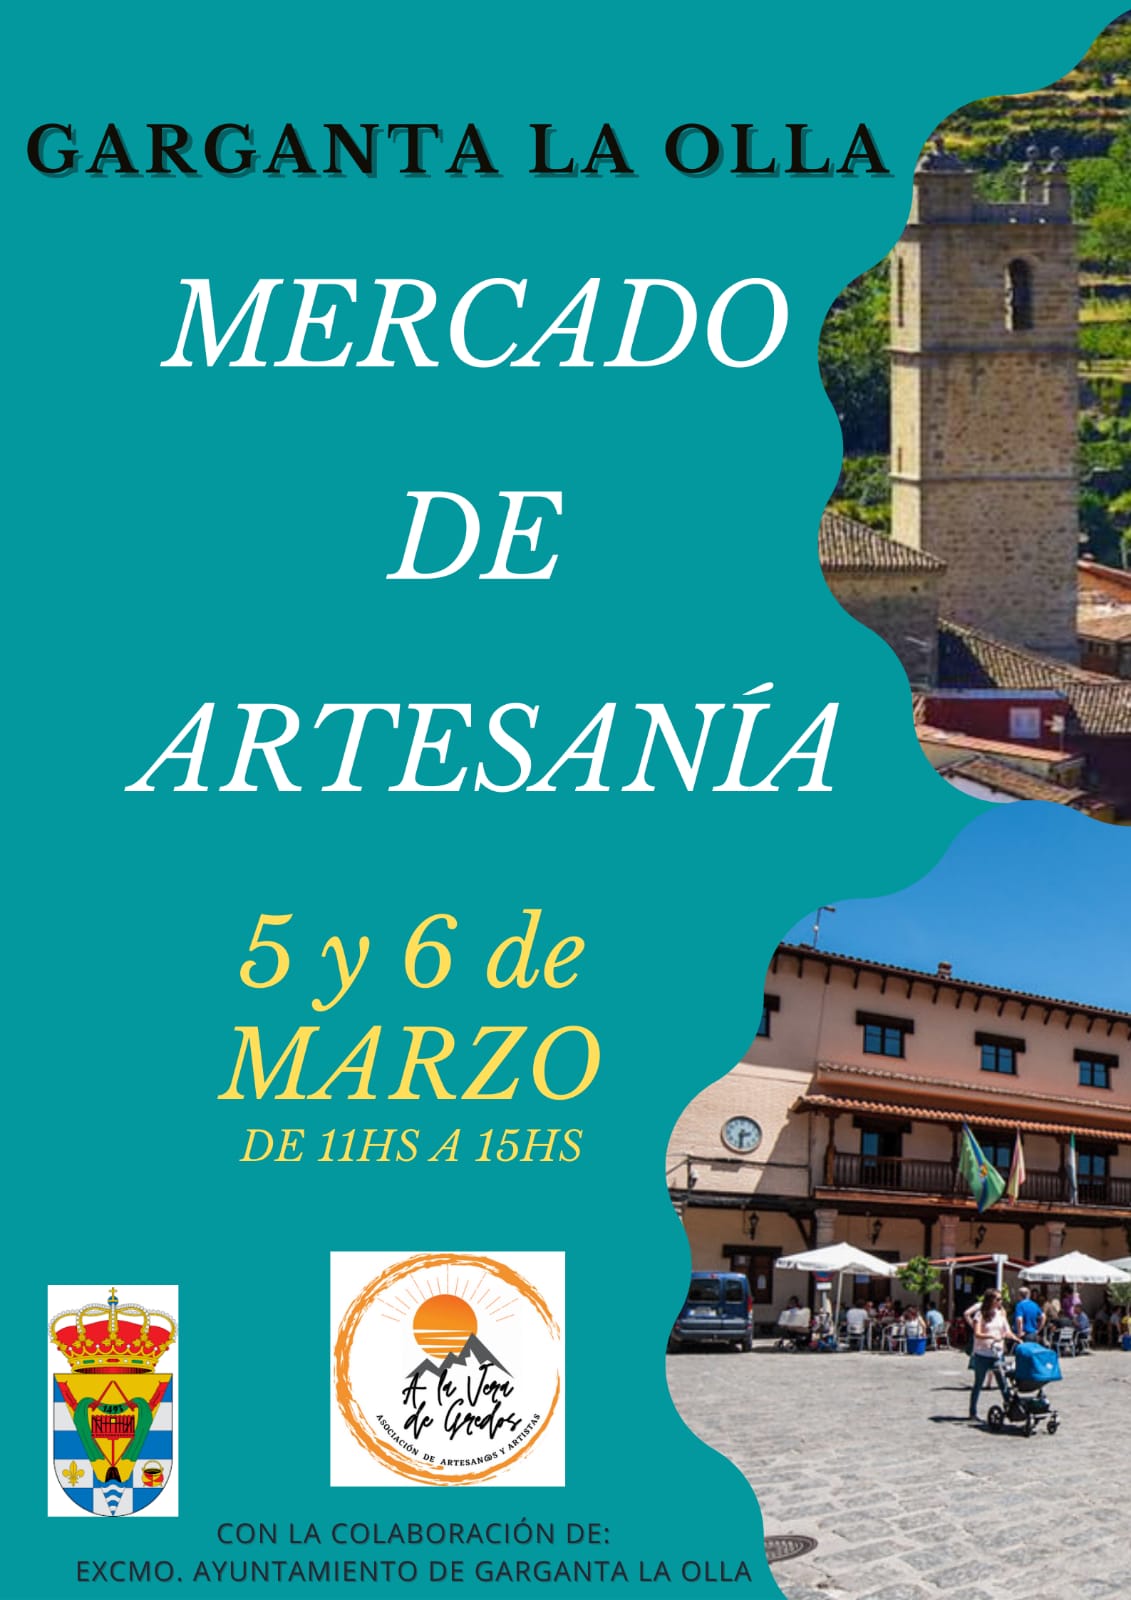 Mercado de Artesania Garganta la Olla